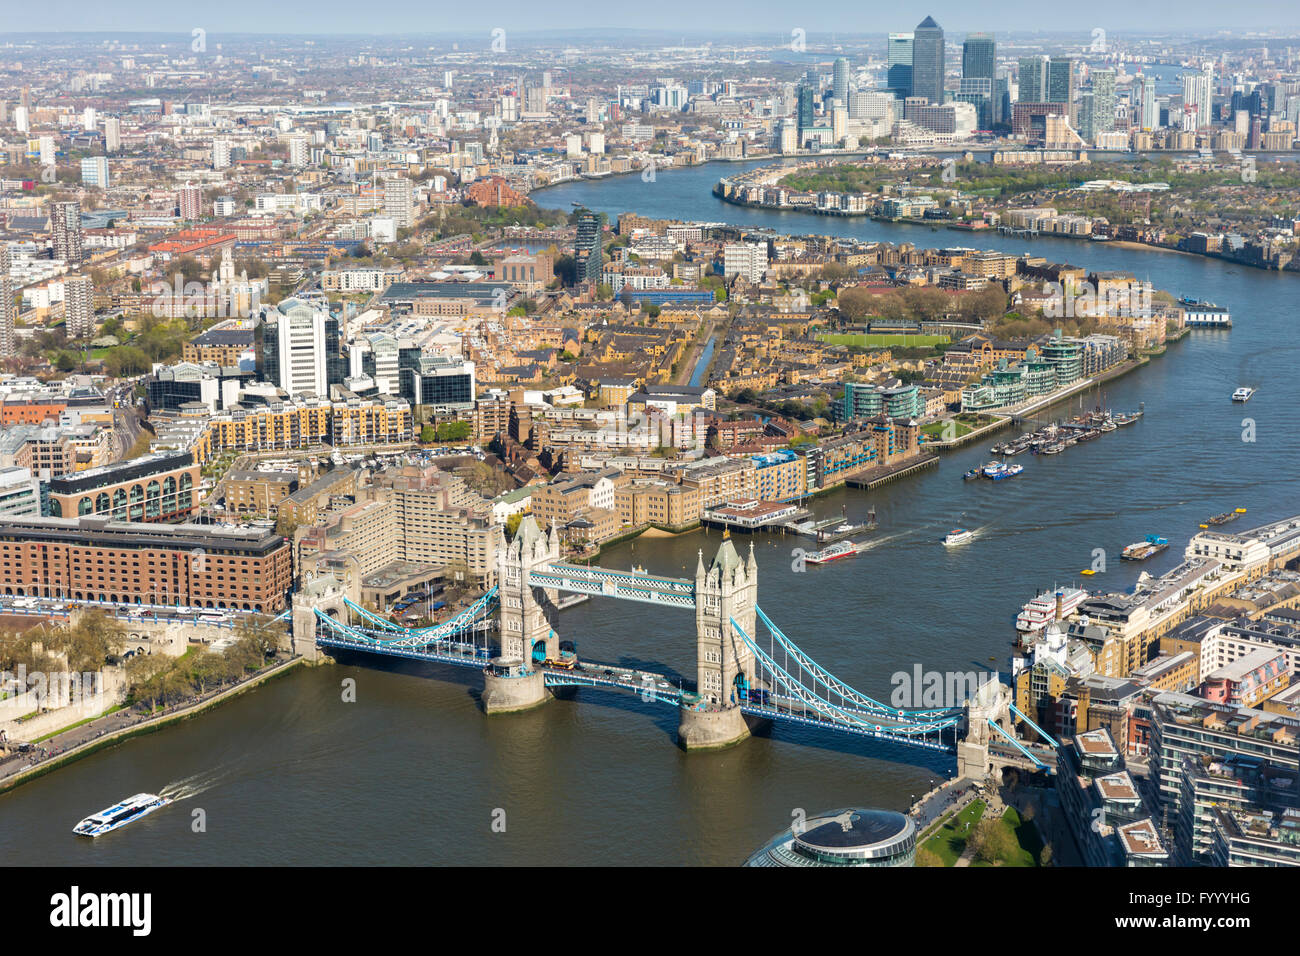 Vue aérienne de la ville de Londres - Tower Bridge et la Tamise vers Canary Wharf, et le sud-est de Londres Banque D'Images